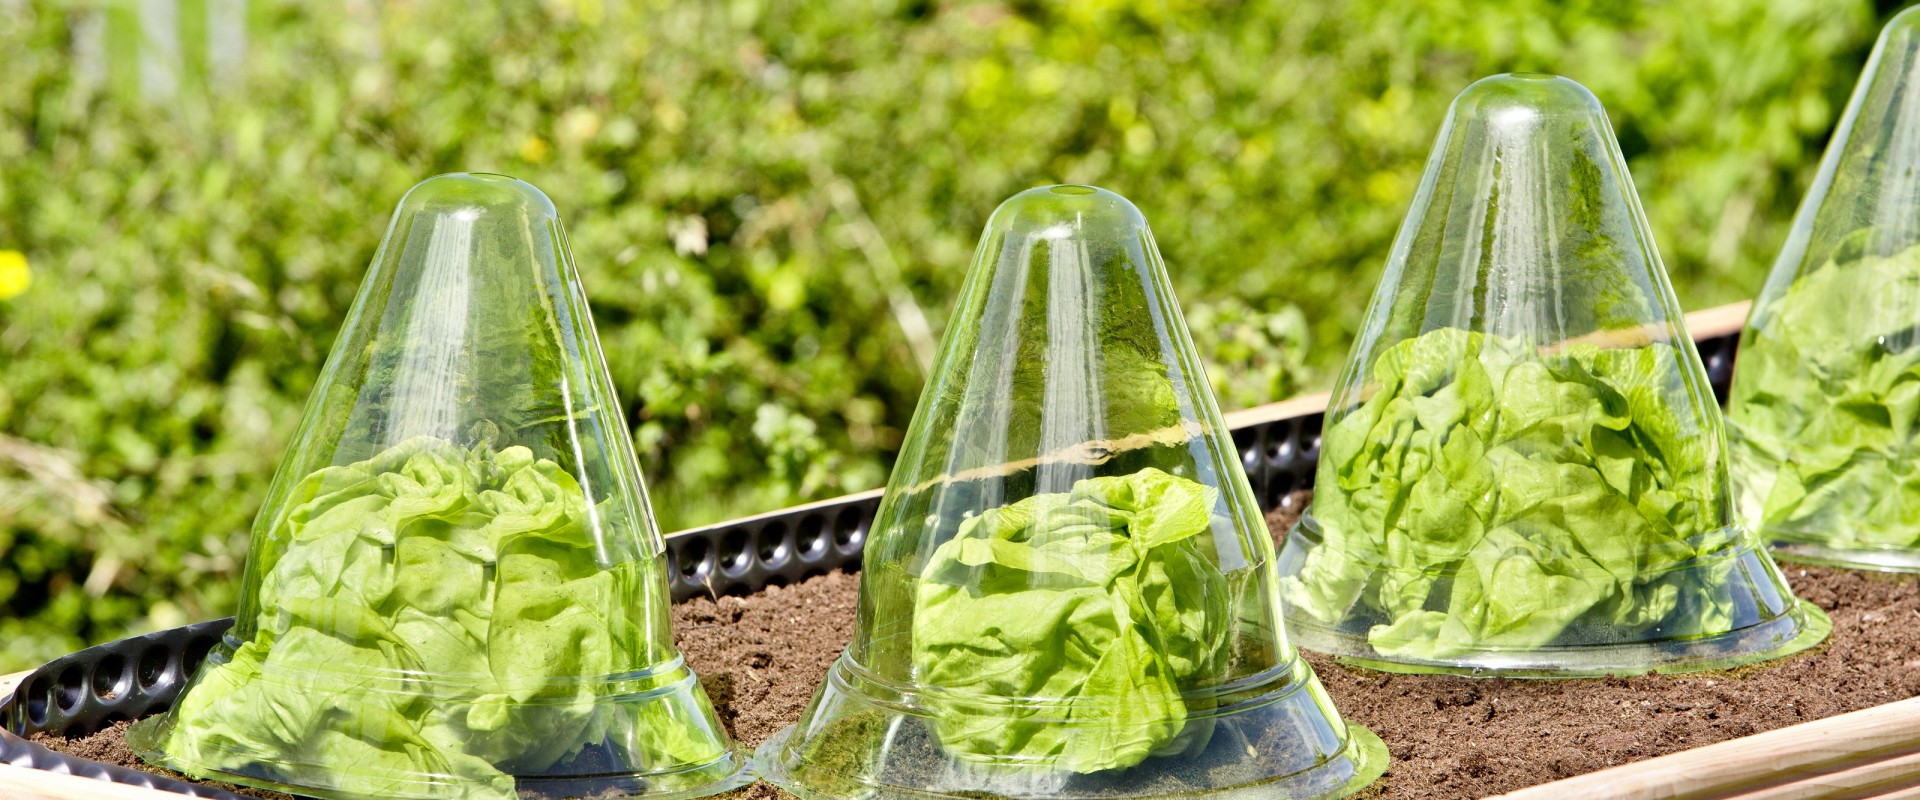 Palántázási kisokos – Így nevelj zamatos zöldségeket otthonodban!